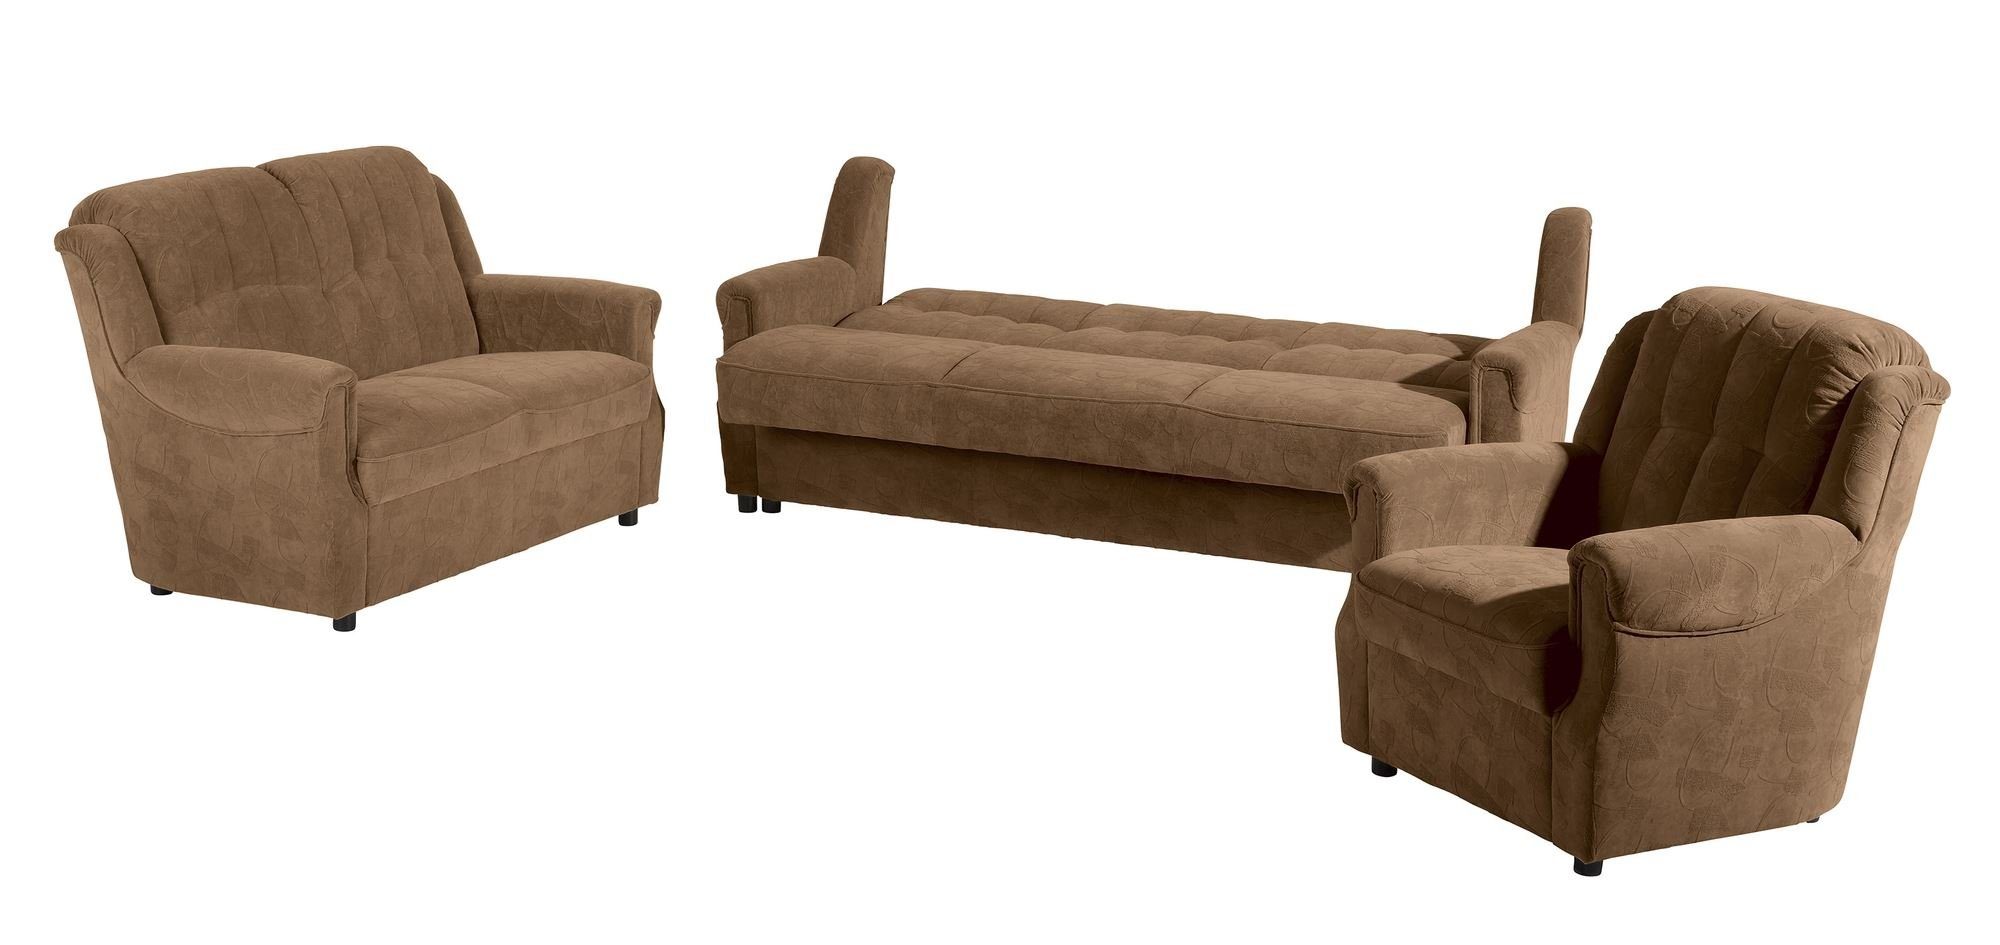 inkl. Sofa Kostenlosem 58 mit Sitz aufm Teile, Versand verarbeitet,bequemer Sparpreis Karuna 3-Sitzer Bettfunktion 1 Sofa Kessel hochwertig Bezug Microf,